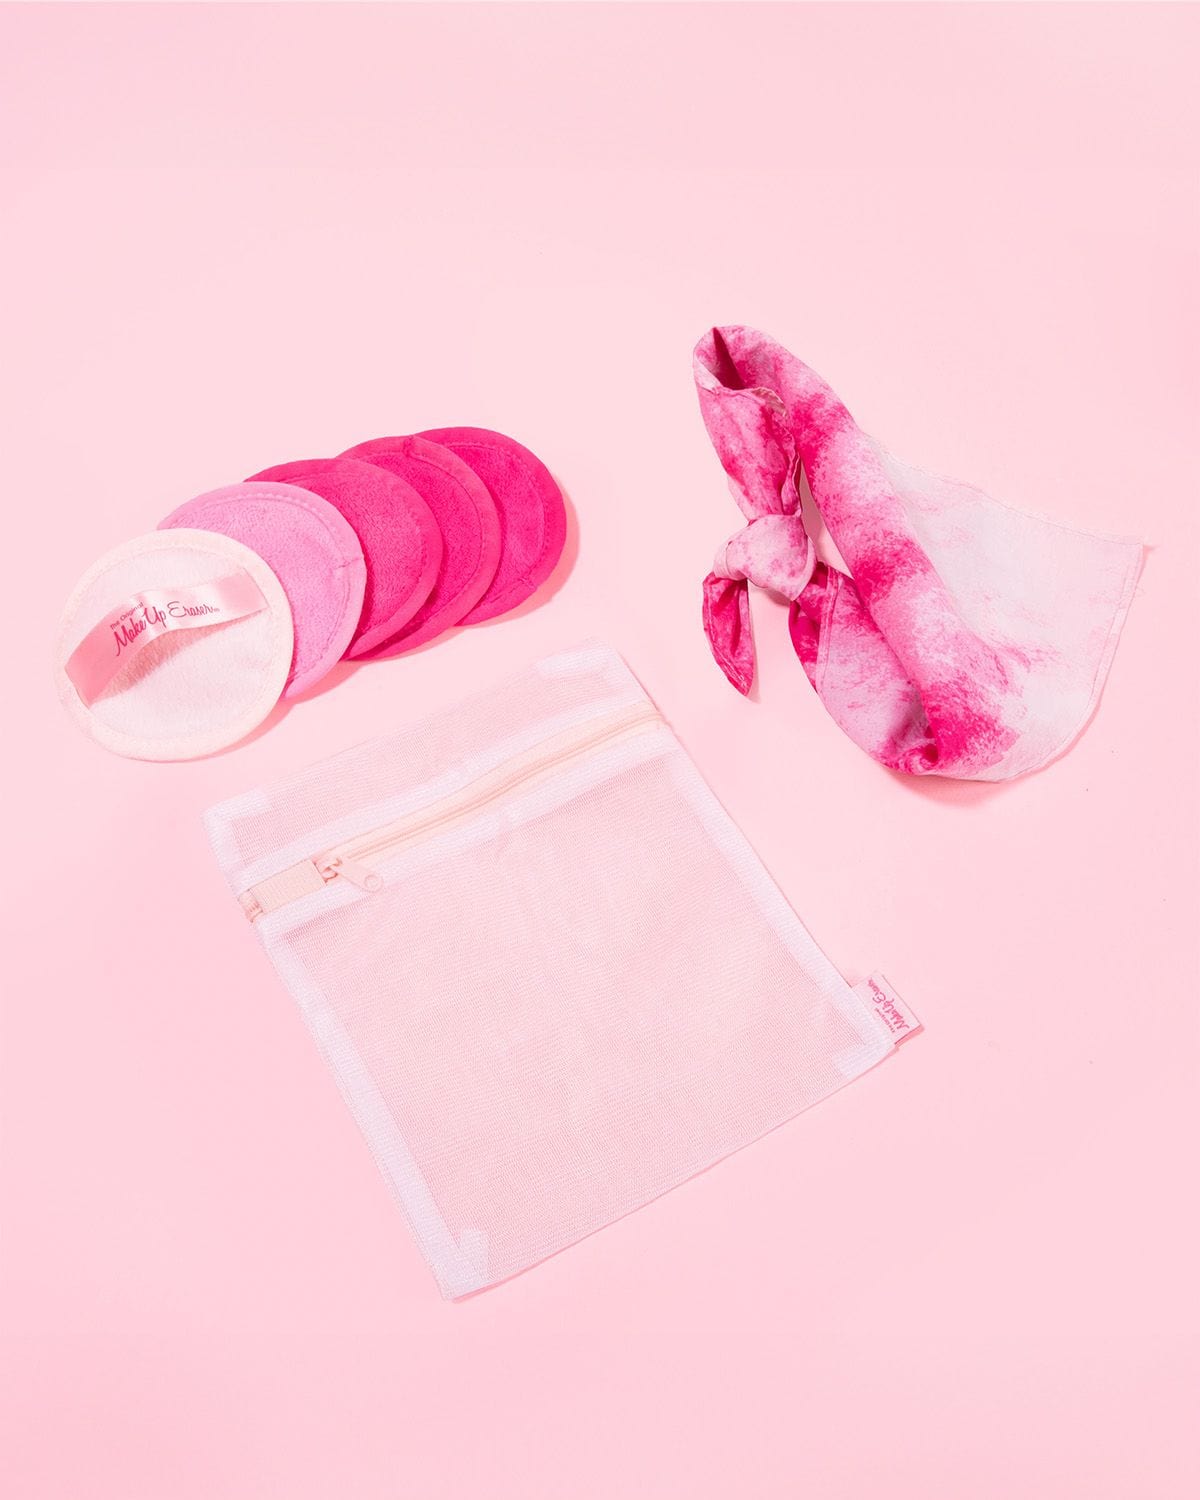 Lace Eraser – Shego Cosmetics